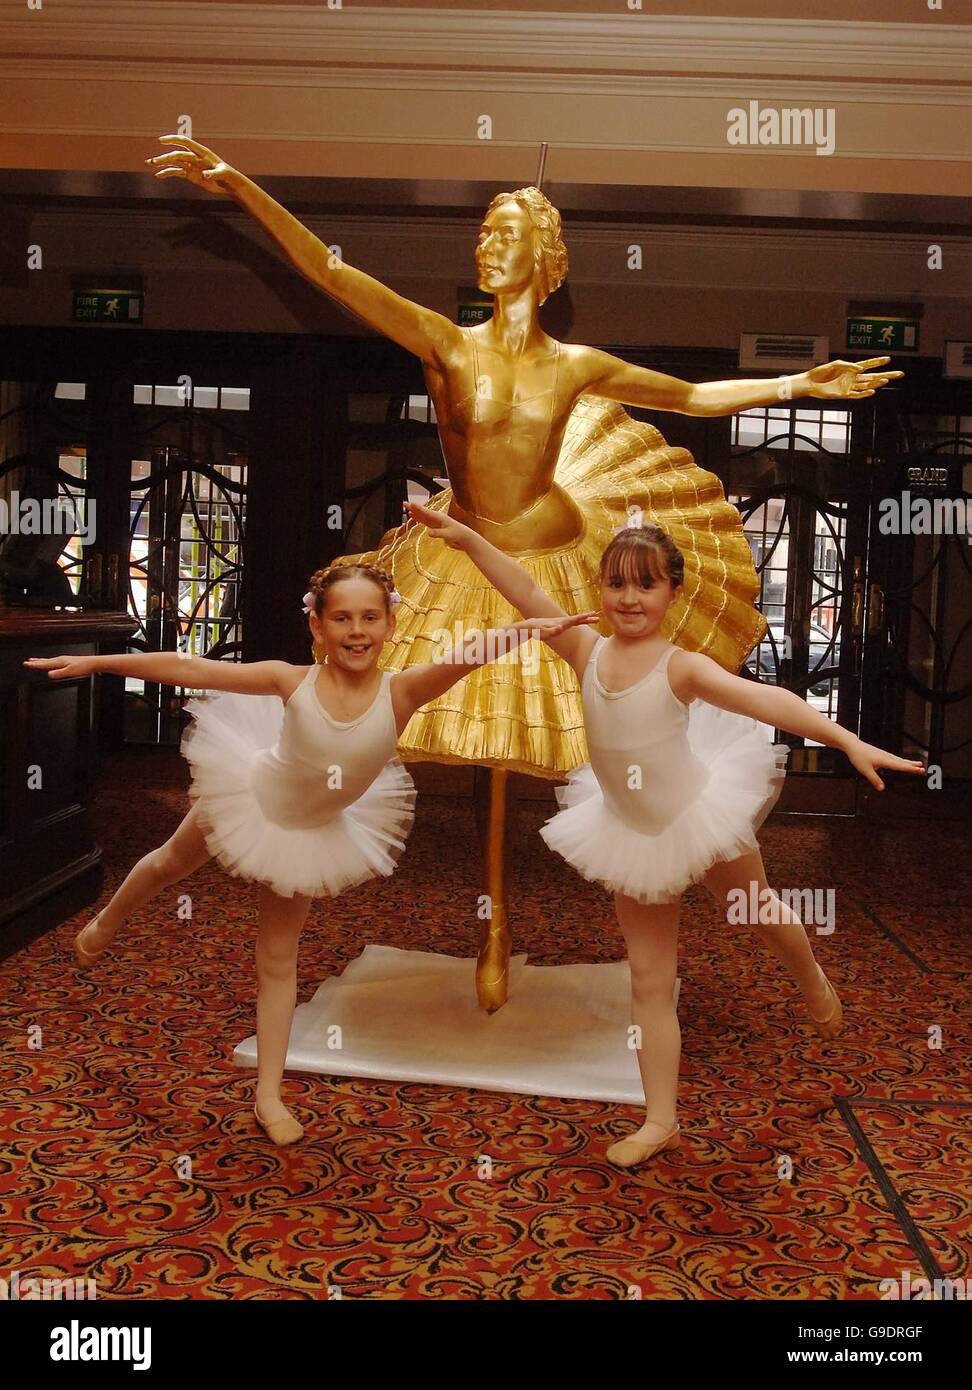 Ballerinas von Billy Elliot The Musical, zeigen die neue Statue der Anna Pavlova, oben auf das Victoria Palace Theatre in London schmücken wird. Bild Datum: Dienstag, 27. Juni. Stockfoto